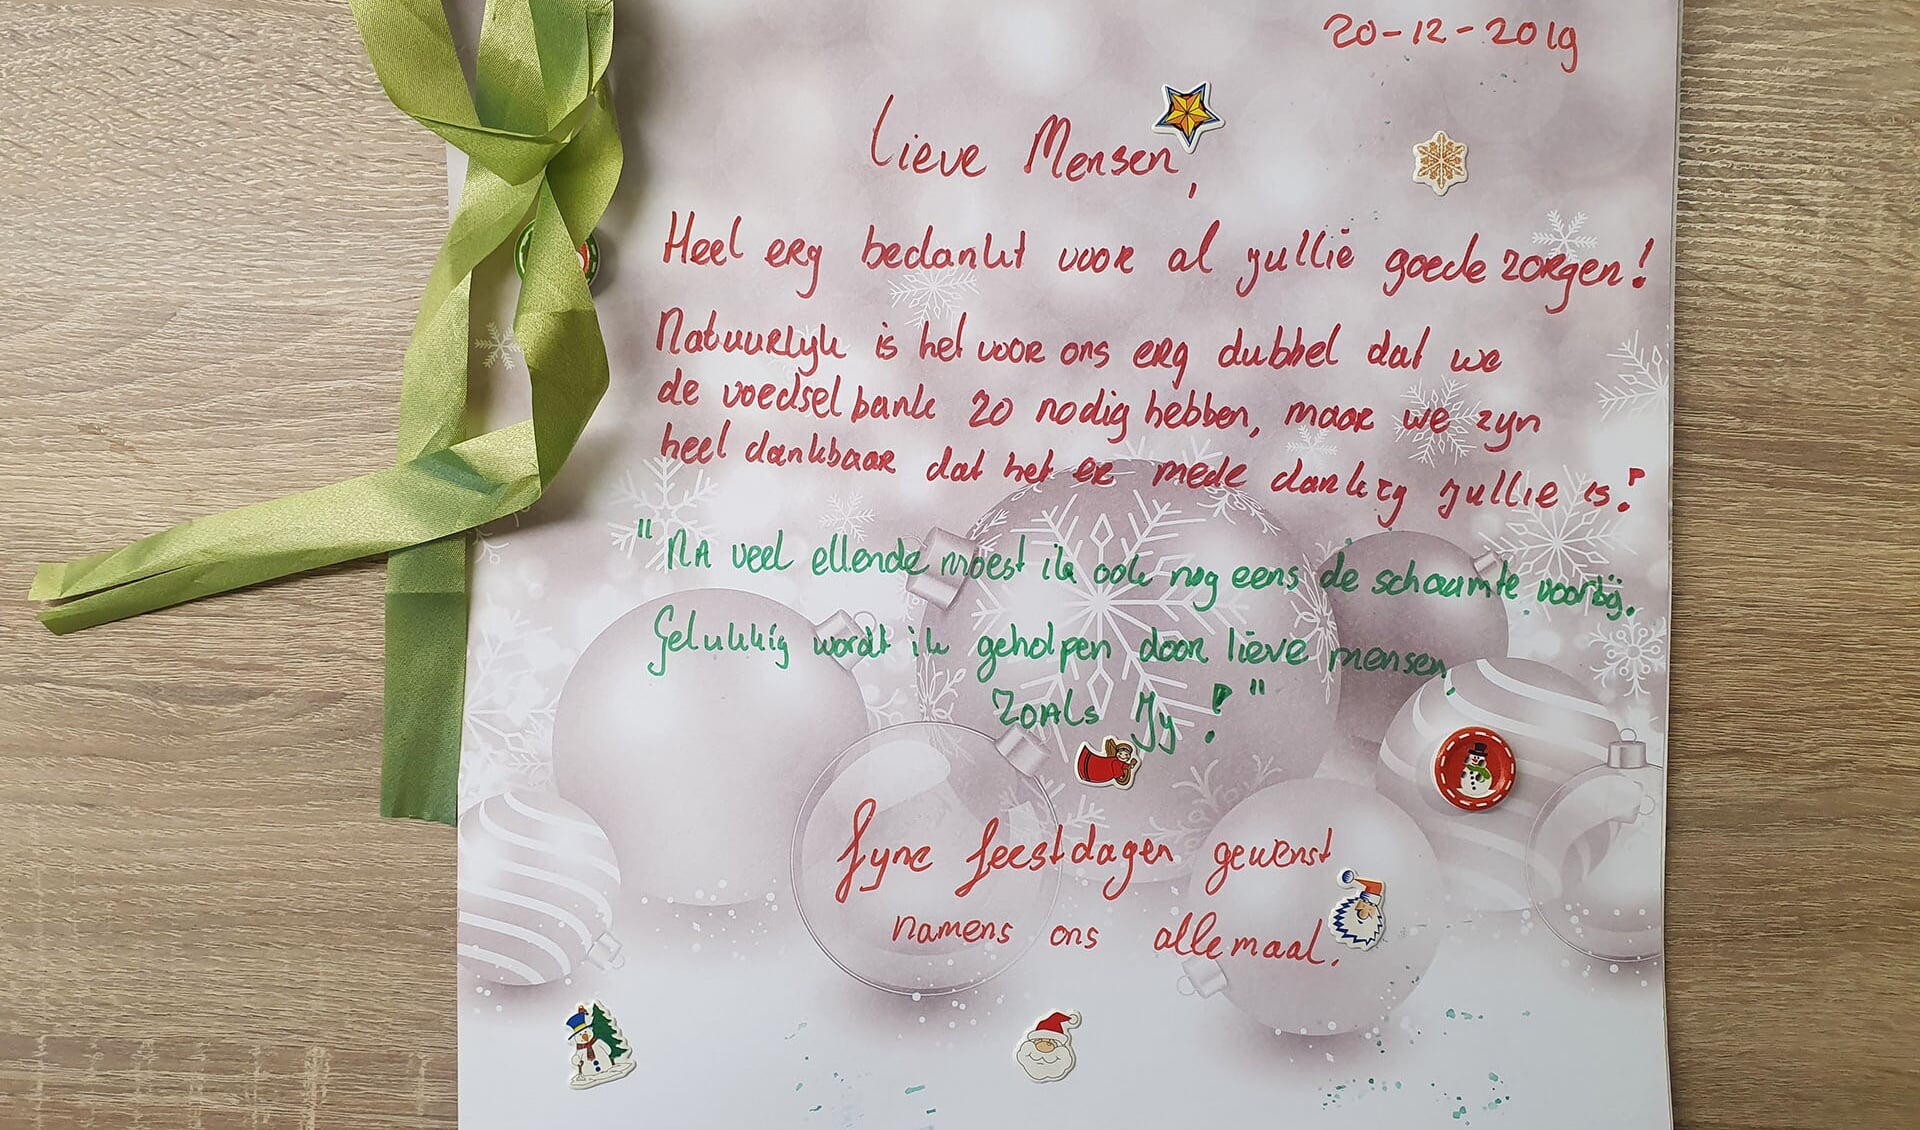 Kerstkaart van Voedselbankklanten in Leusden voor de Vrijwilligers